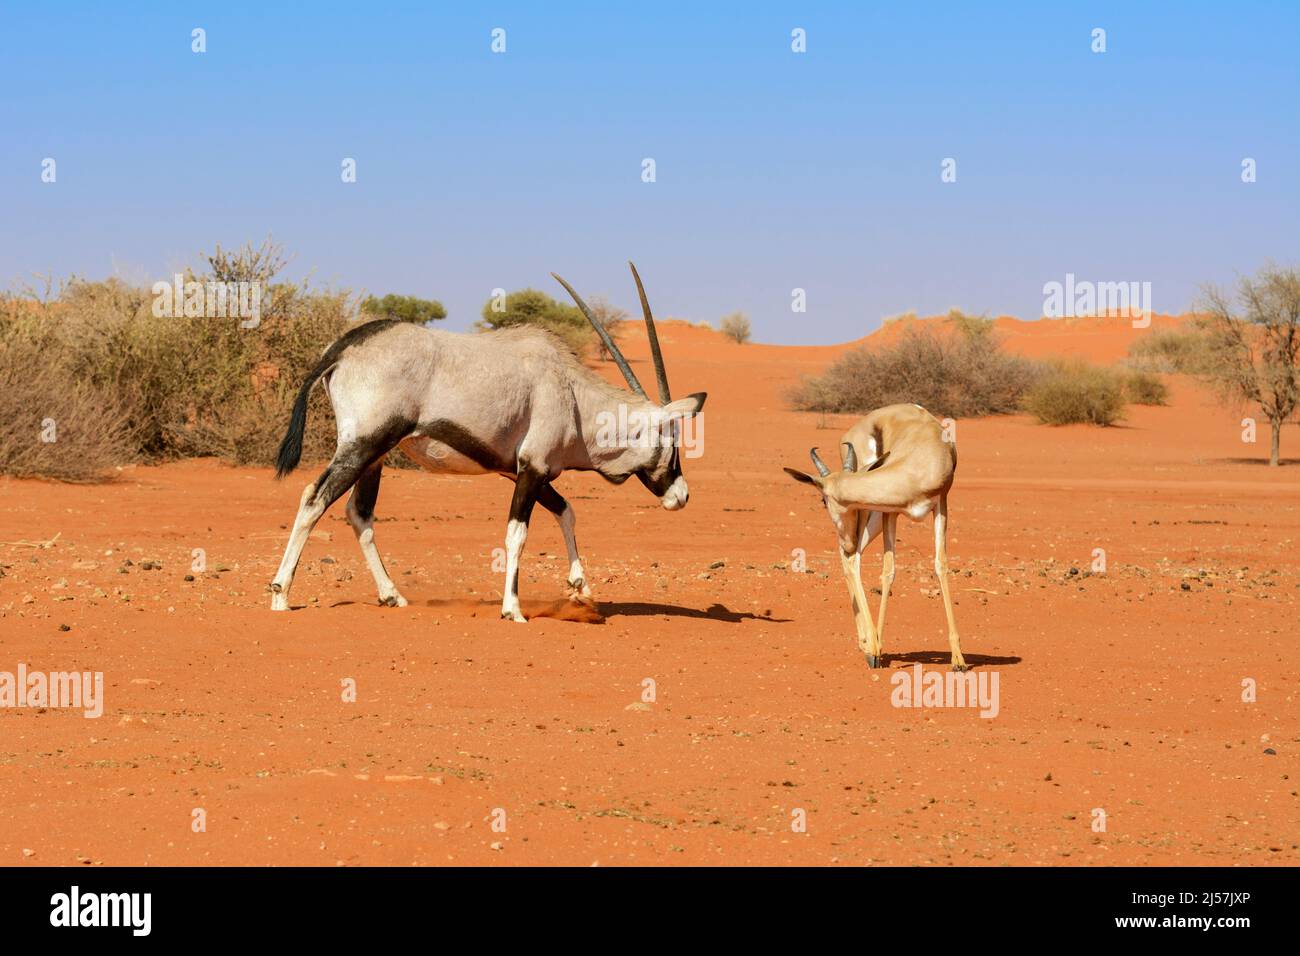 Un Oryx d'Afrique du Sud (Oryx gazella) et un antilope de printemps (Antidorcas marsupialis) marchant dans le désert de Kalahari, Namibie, Afrique du Sud-Ouest Banque D'Images